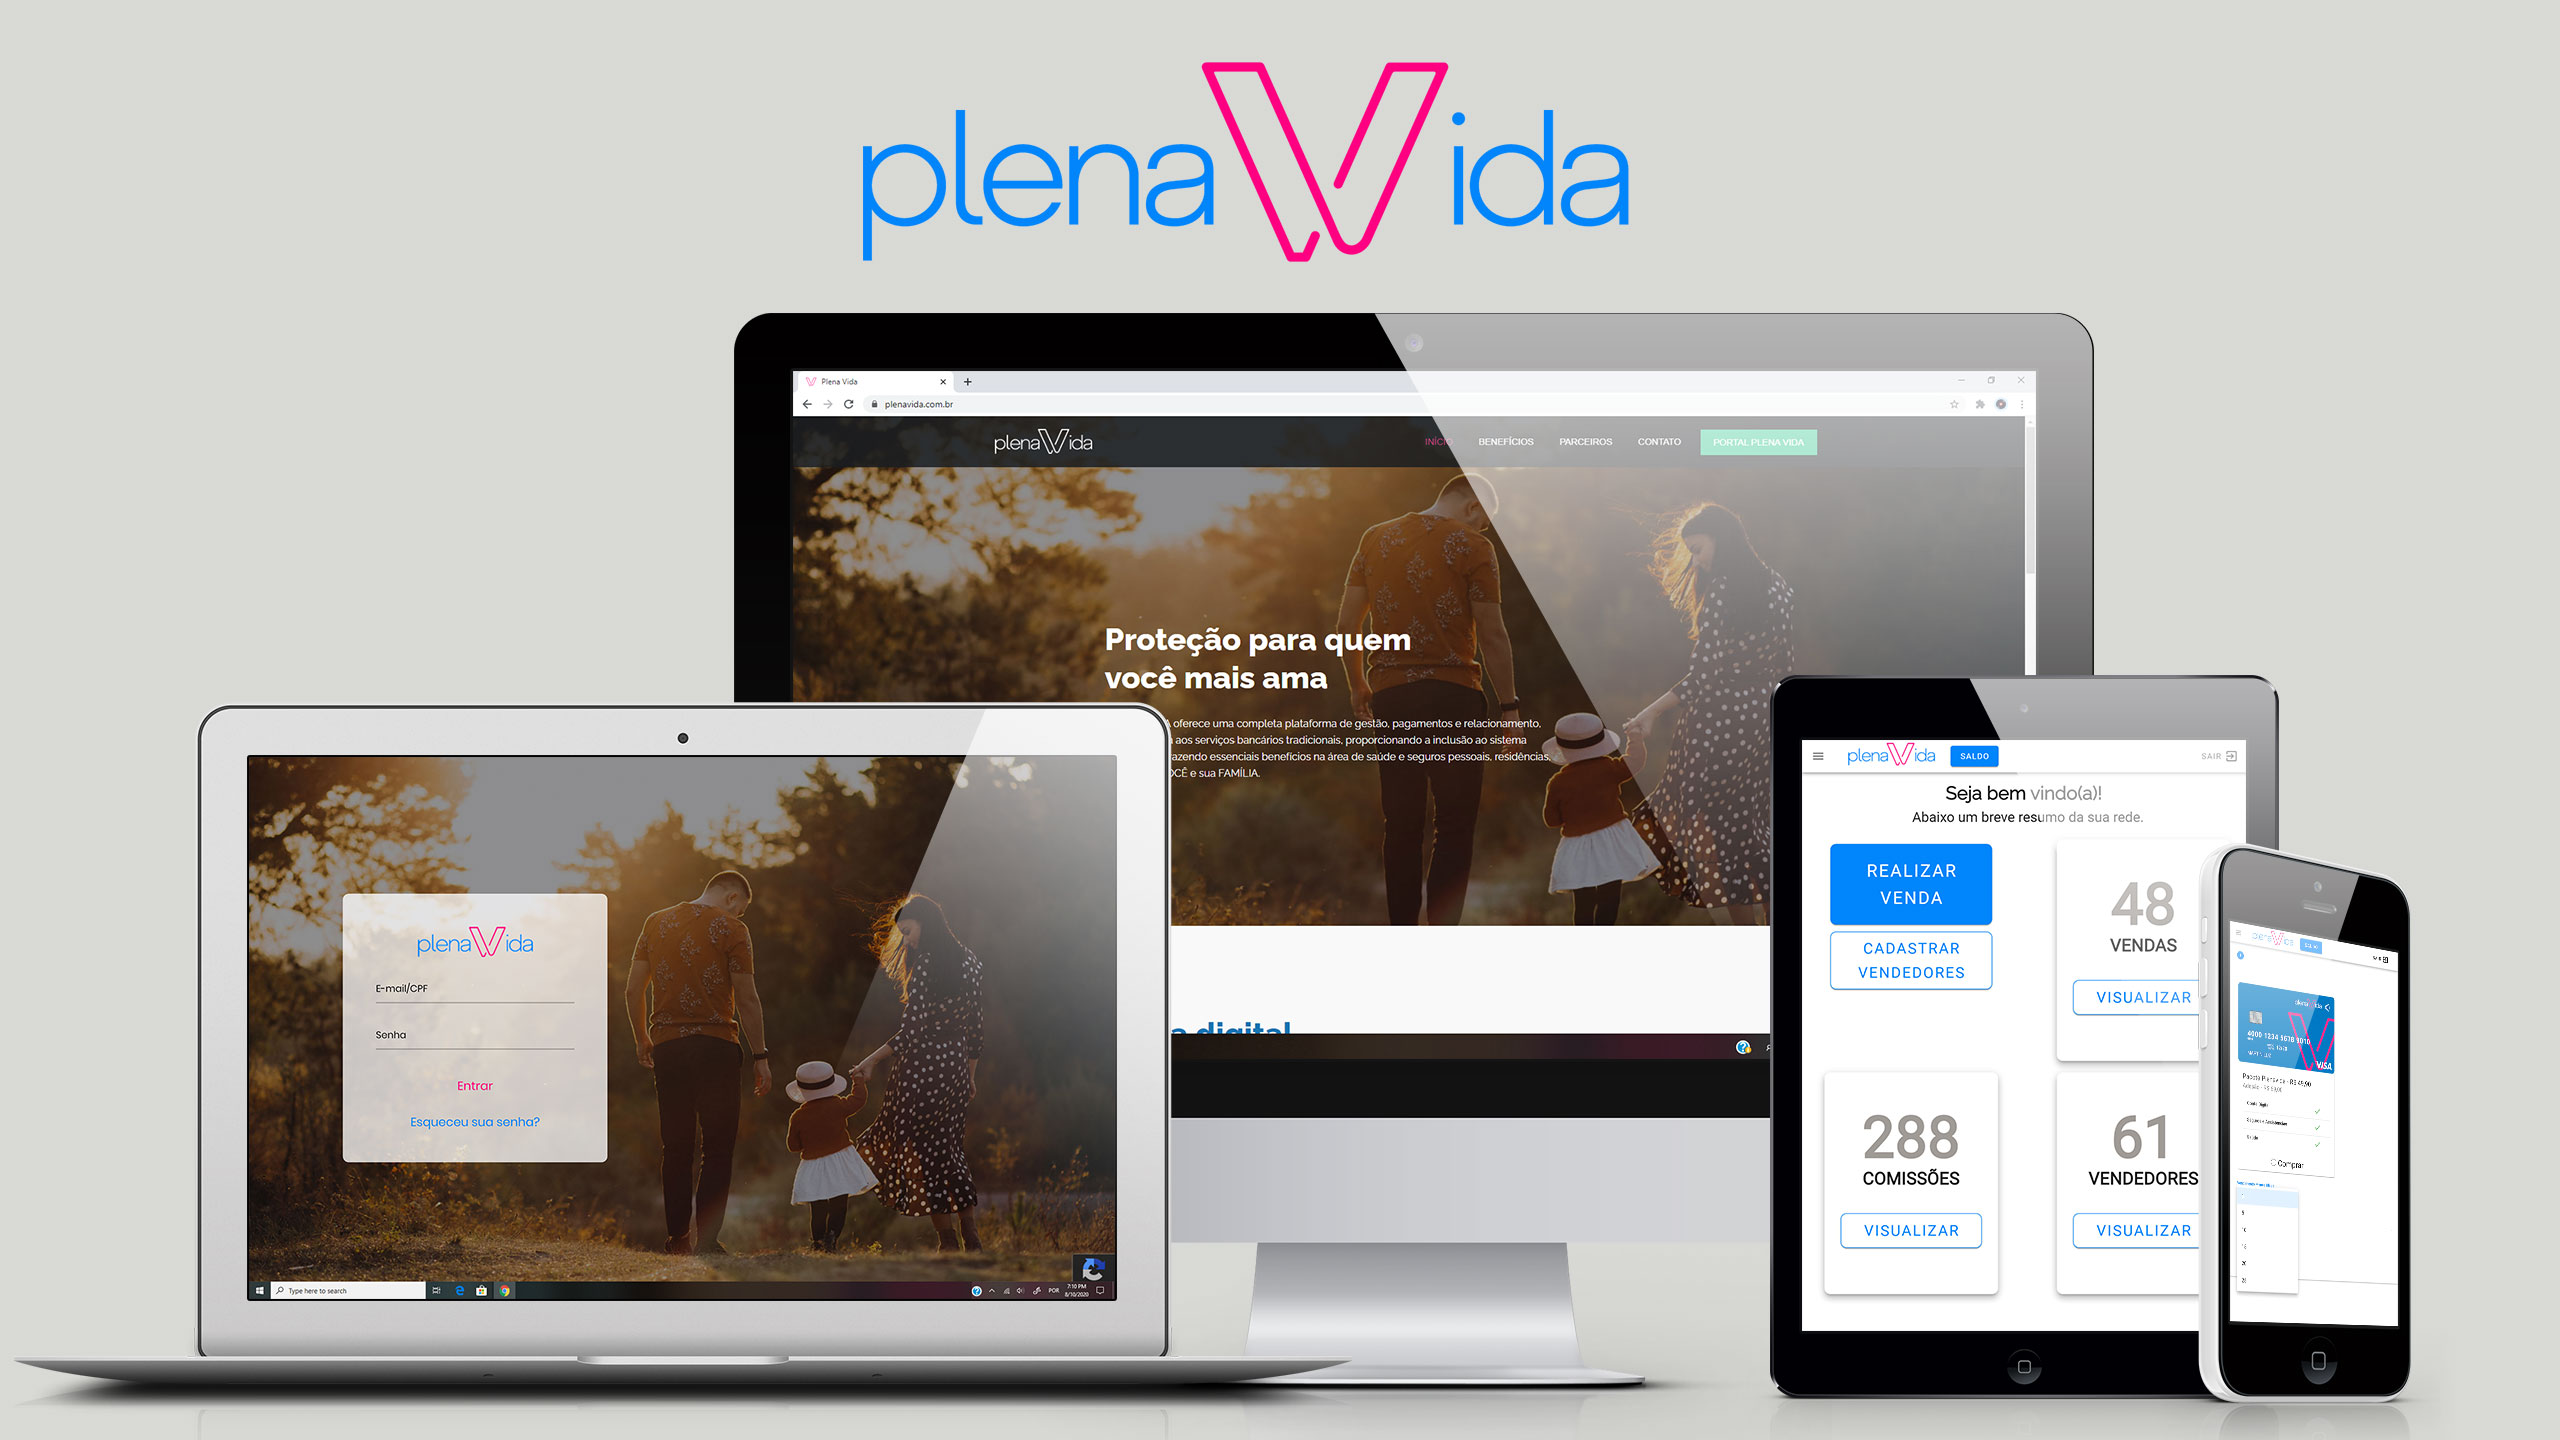 (c) Plenavida.com.br